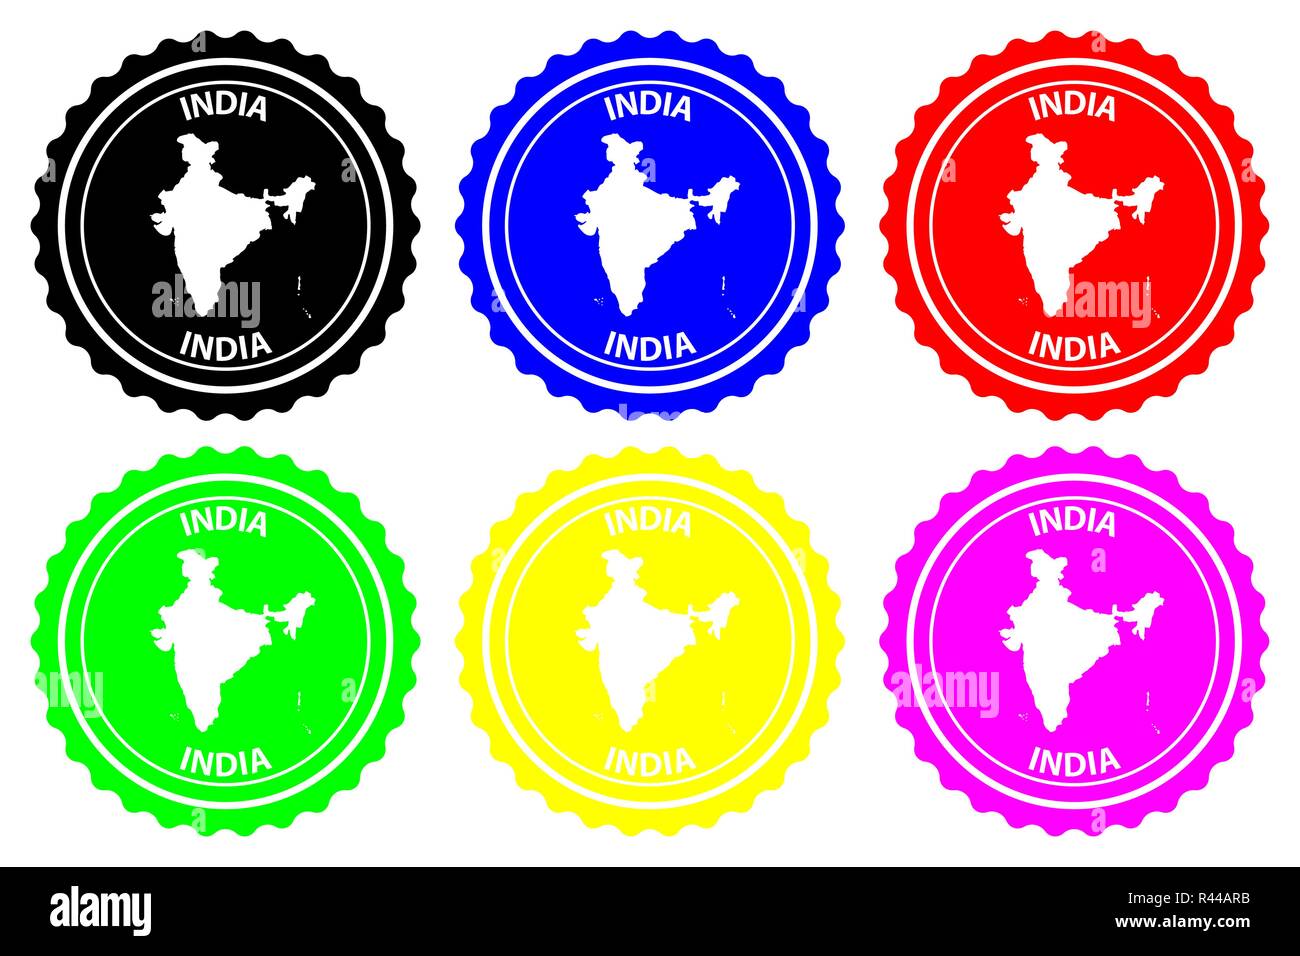 Indien - Stempel - Vektor, Republik Indien Karte Muster - Aufkleber - Schwarz, Blau, Grün, Gelb, Lila und Rot Stock Vektor